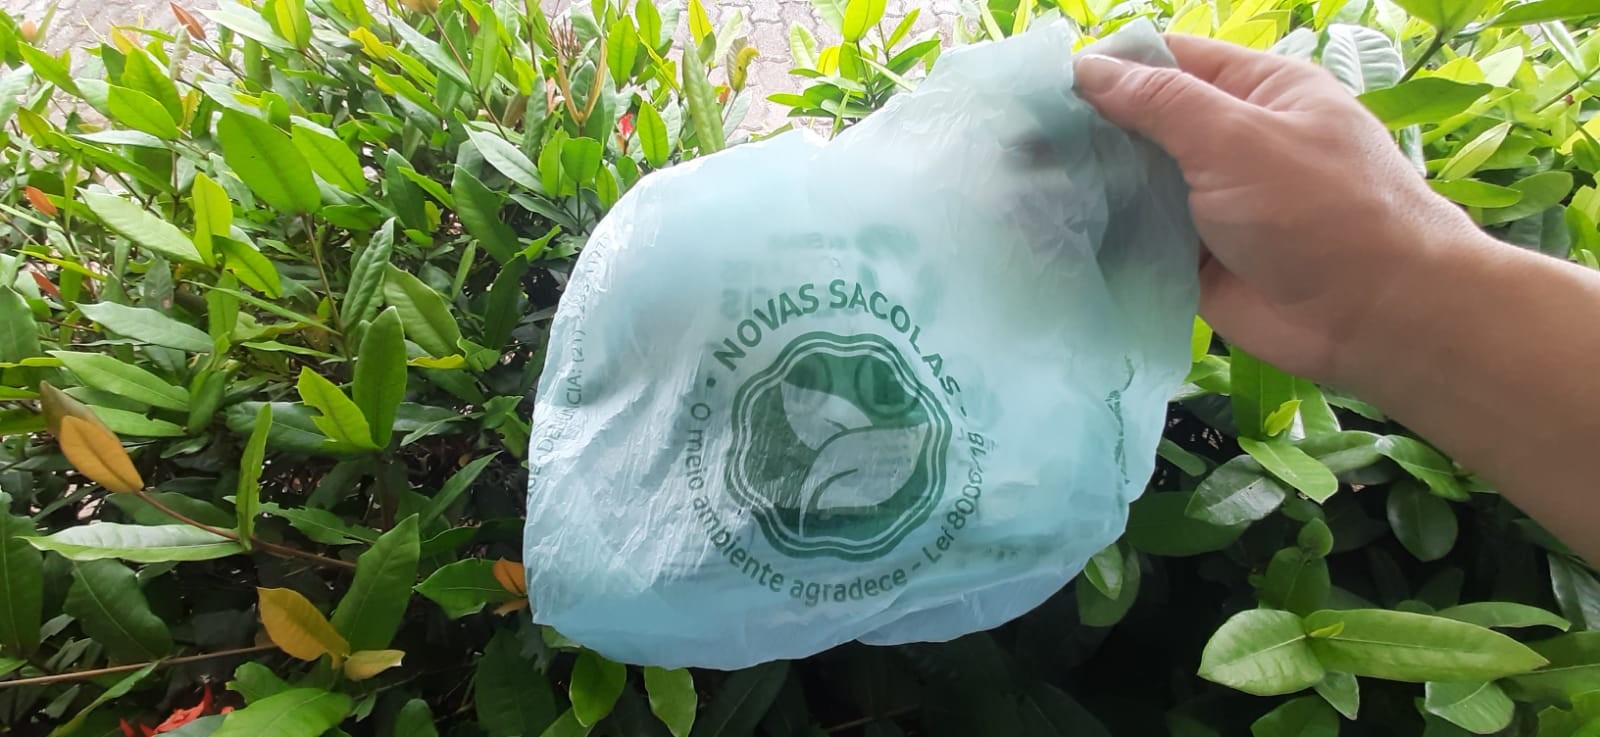 Prefeitura de Cabo Frio lança projeto nesta quarta em busca de parceria para distribuir sacolas biodegradáveis nas praias no verão